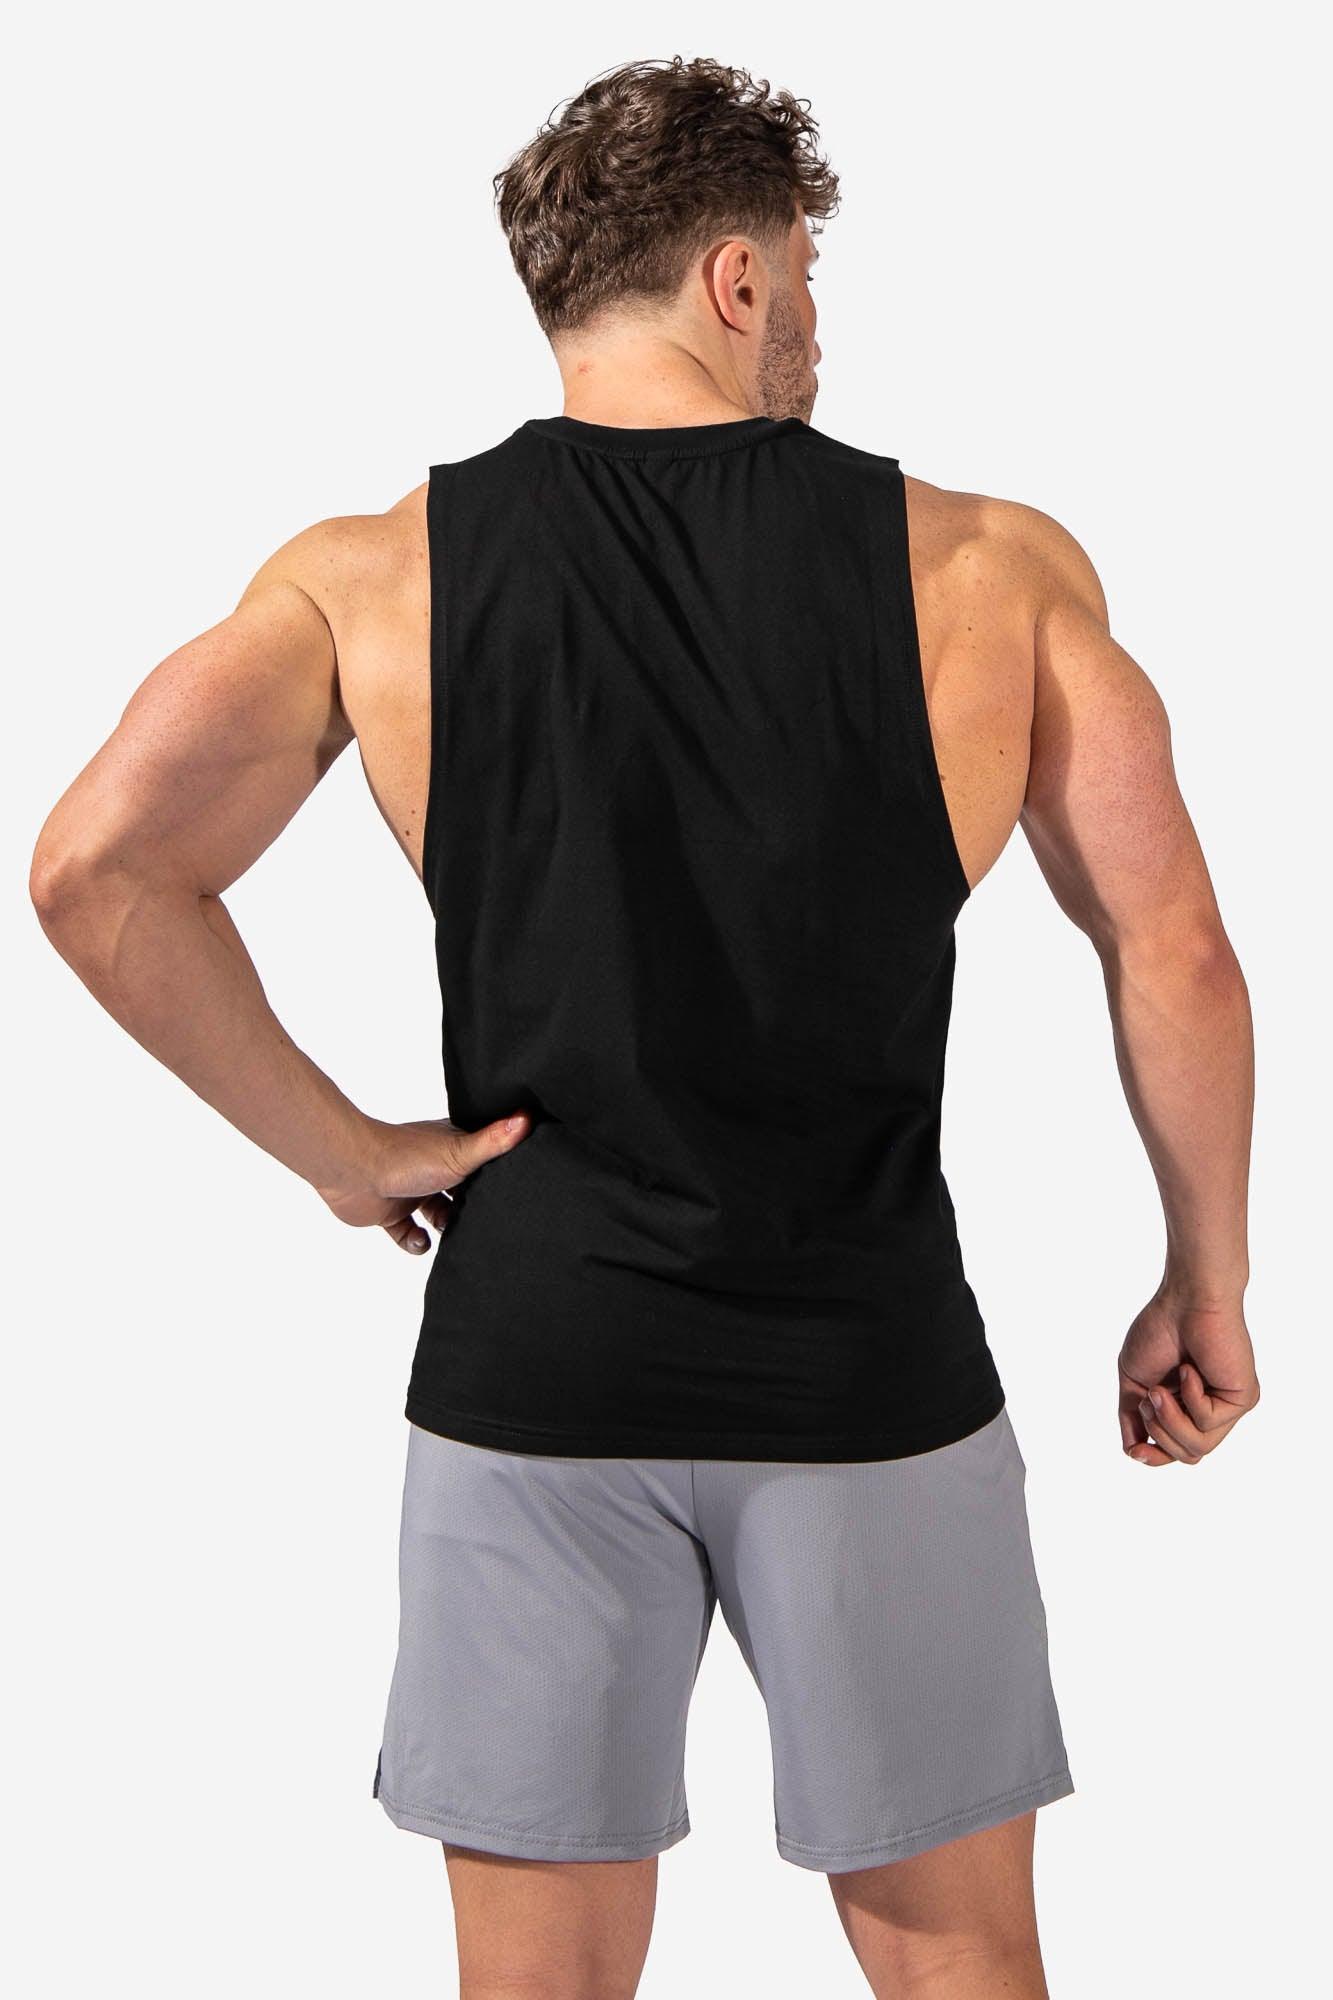 Men's Sleeveless Cut Off Tank Top Shirt (4388292591683)